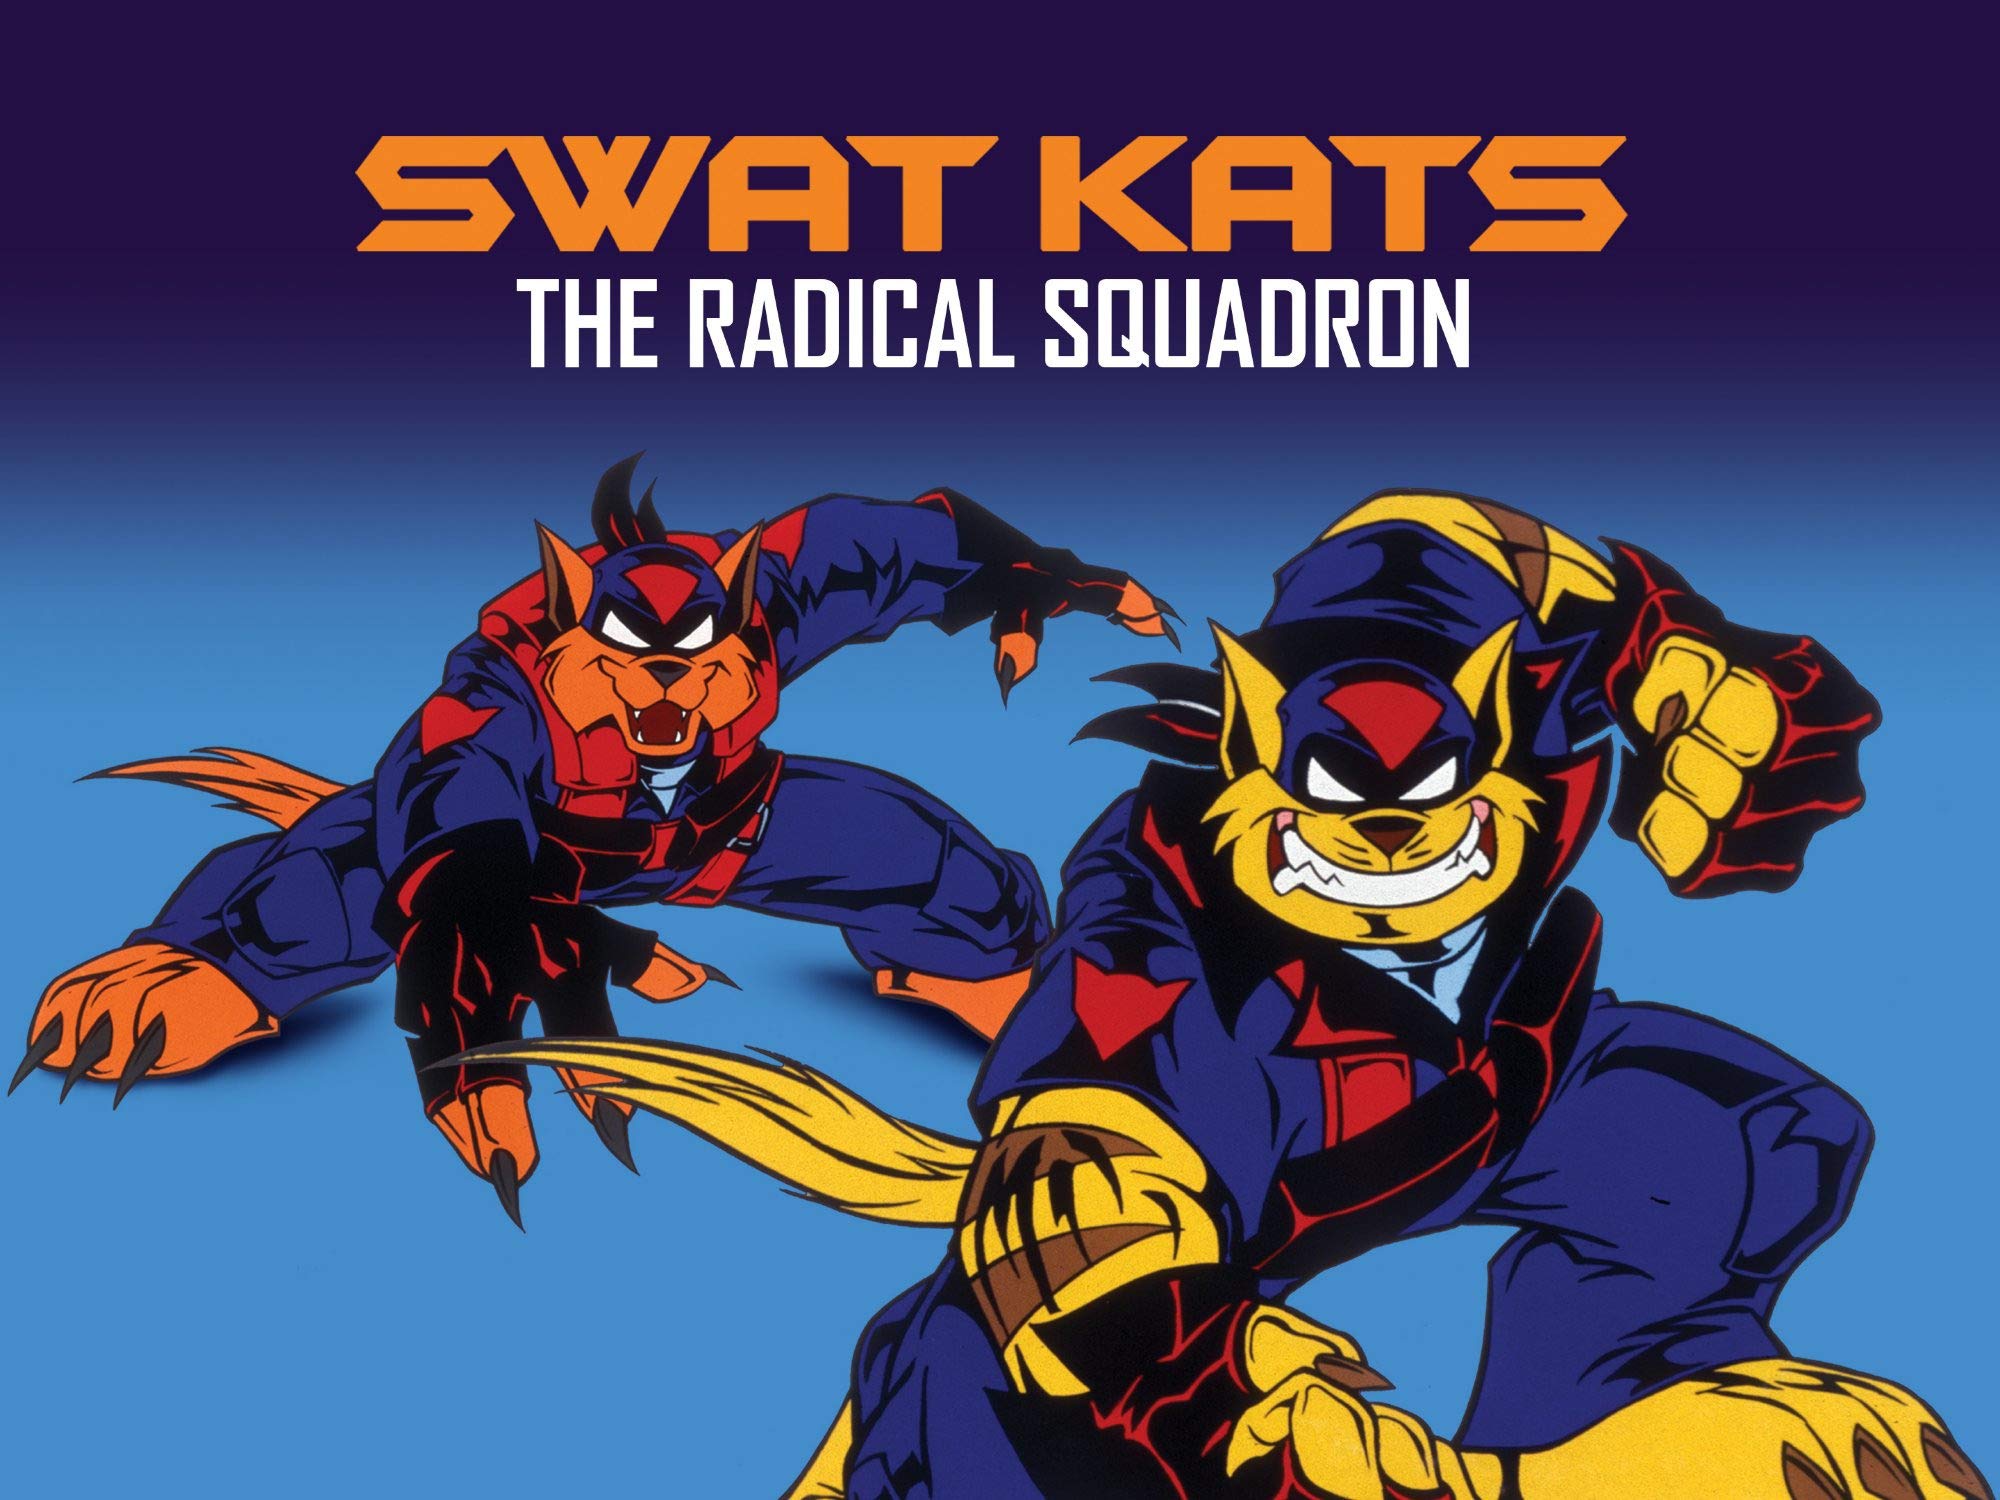 En del bestøve entanglement Swat Kats: The radical squadron | Teletoon Wiki | Fandom